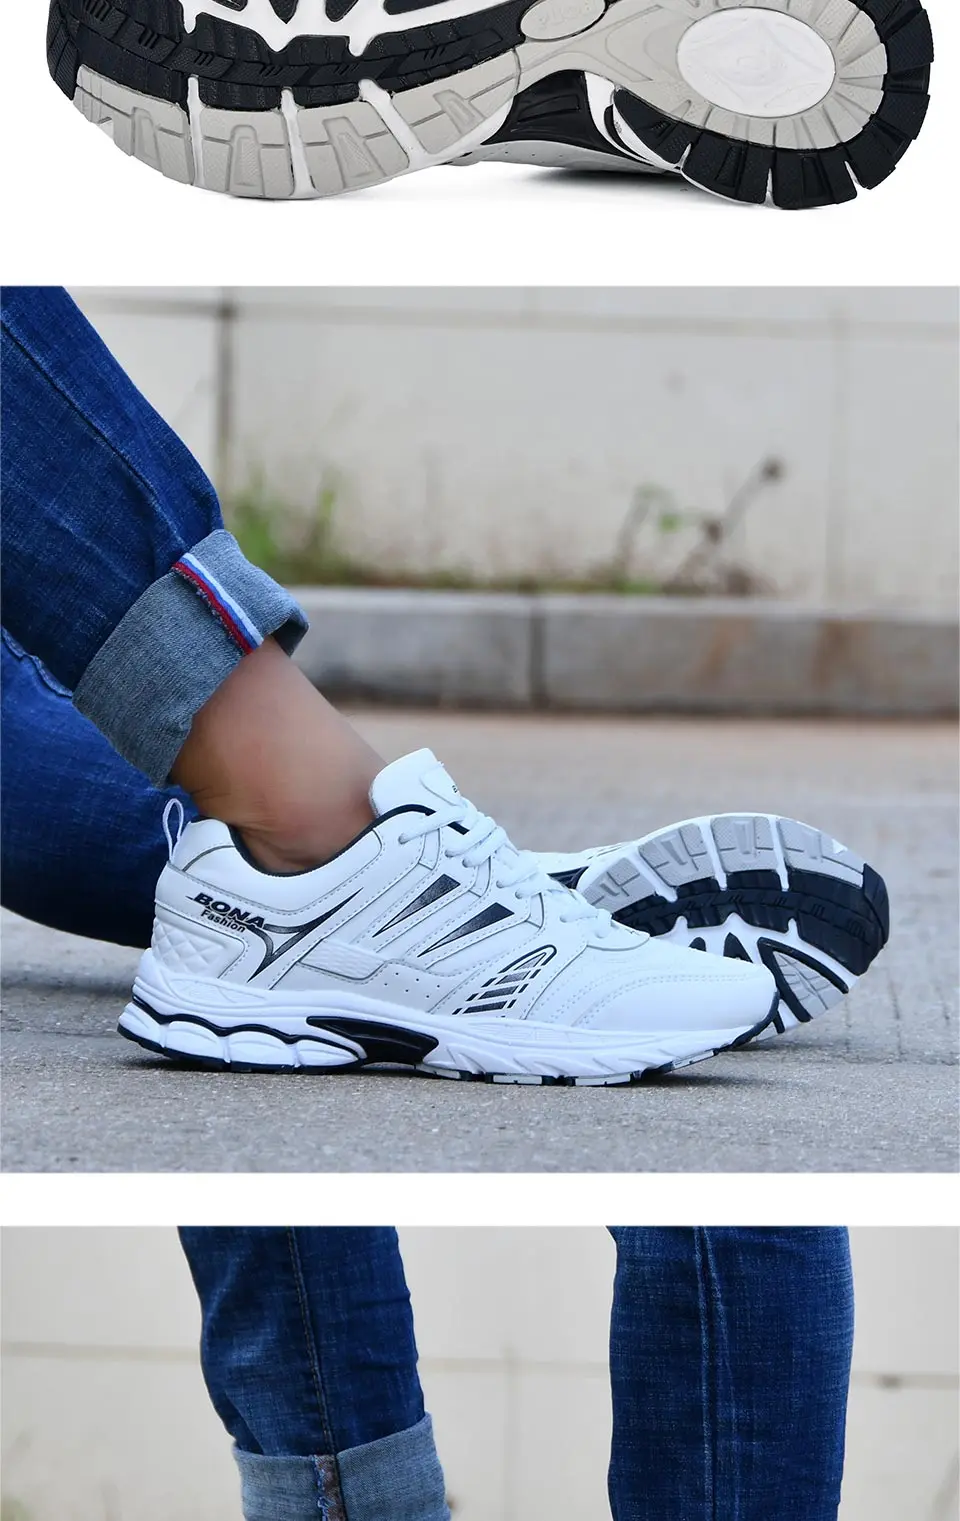 BONA 2018 новый дизайн стиль Мужская обувь дышащие популярные для мужчин кроссовки открытый тапки удобная спортивная обувь Бесплатная